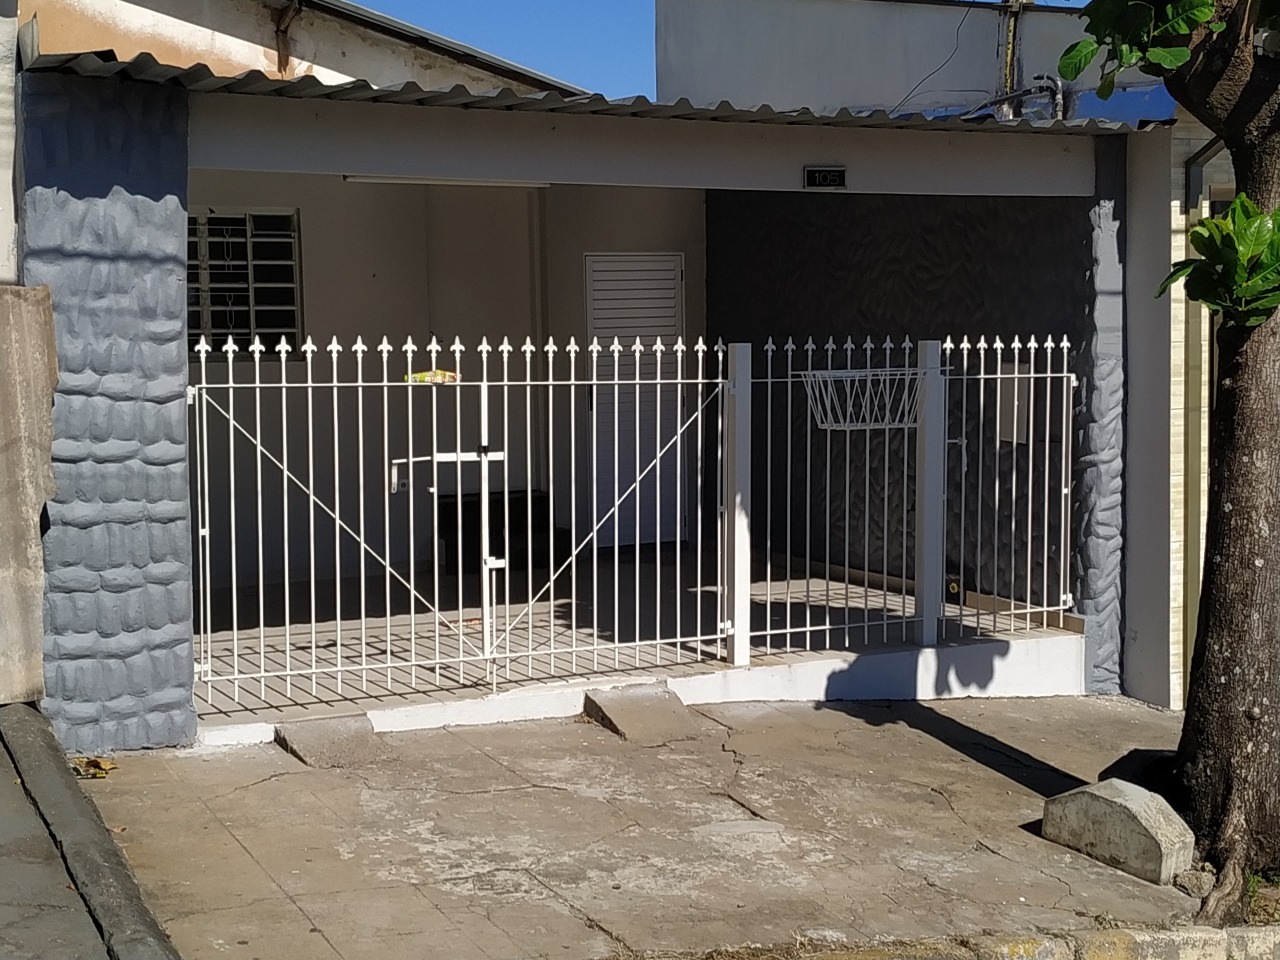 Casa à venda, 2 quartos, no bairro Jardim Santo Antônio em Rio das Pedras - SP